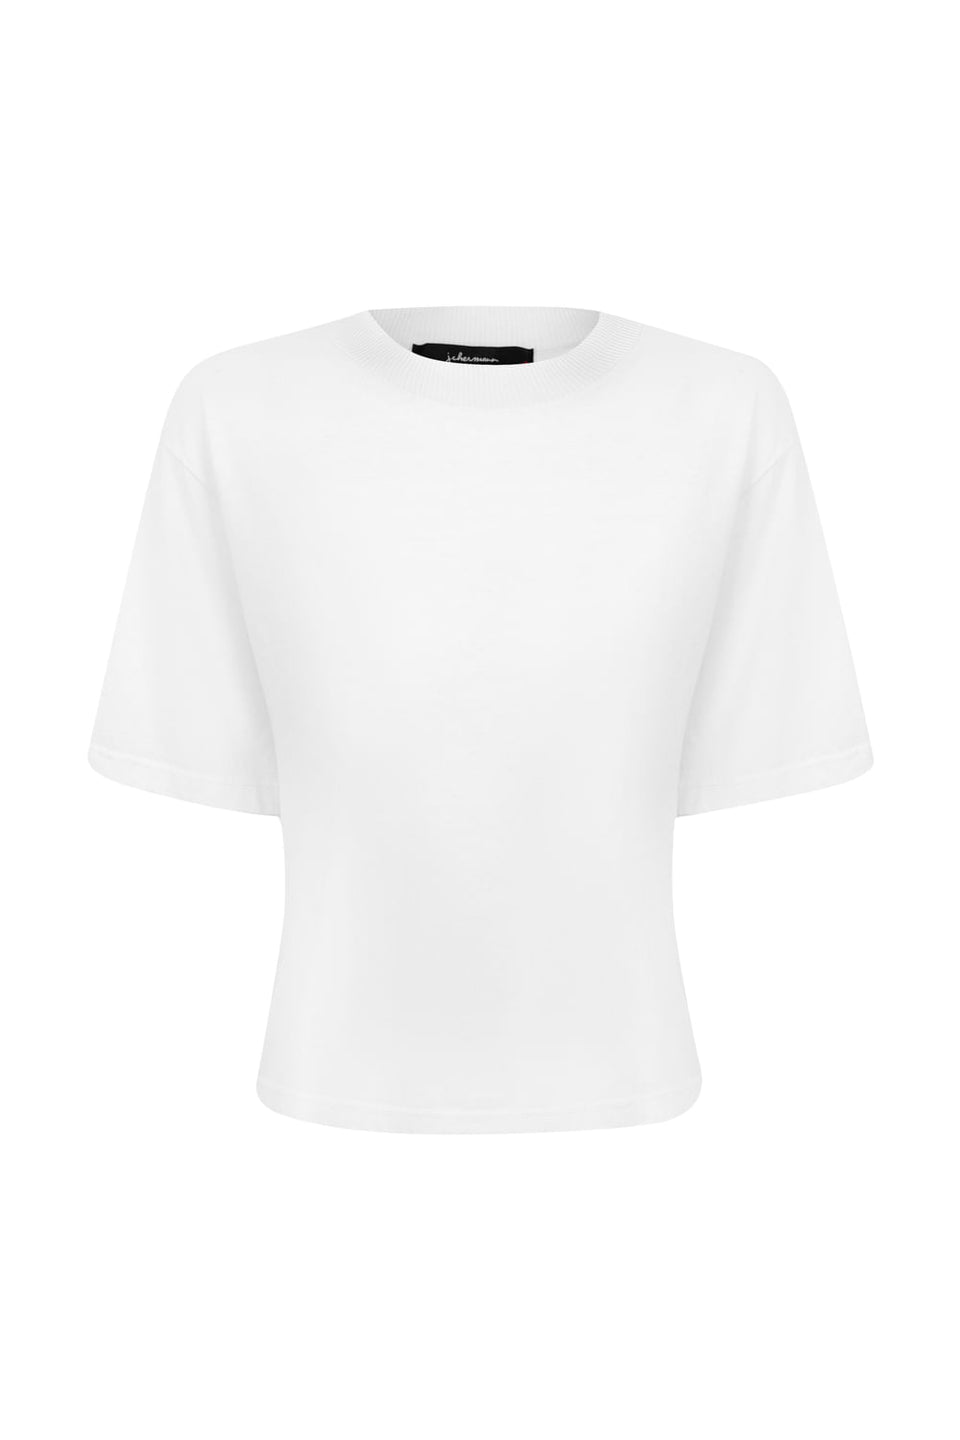 Camiseta Cropped Algodão Branco